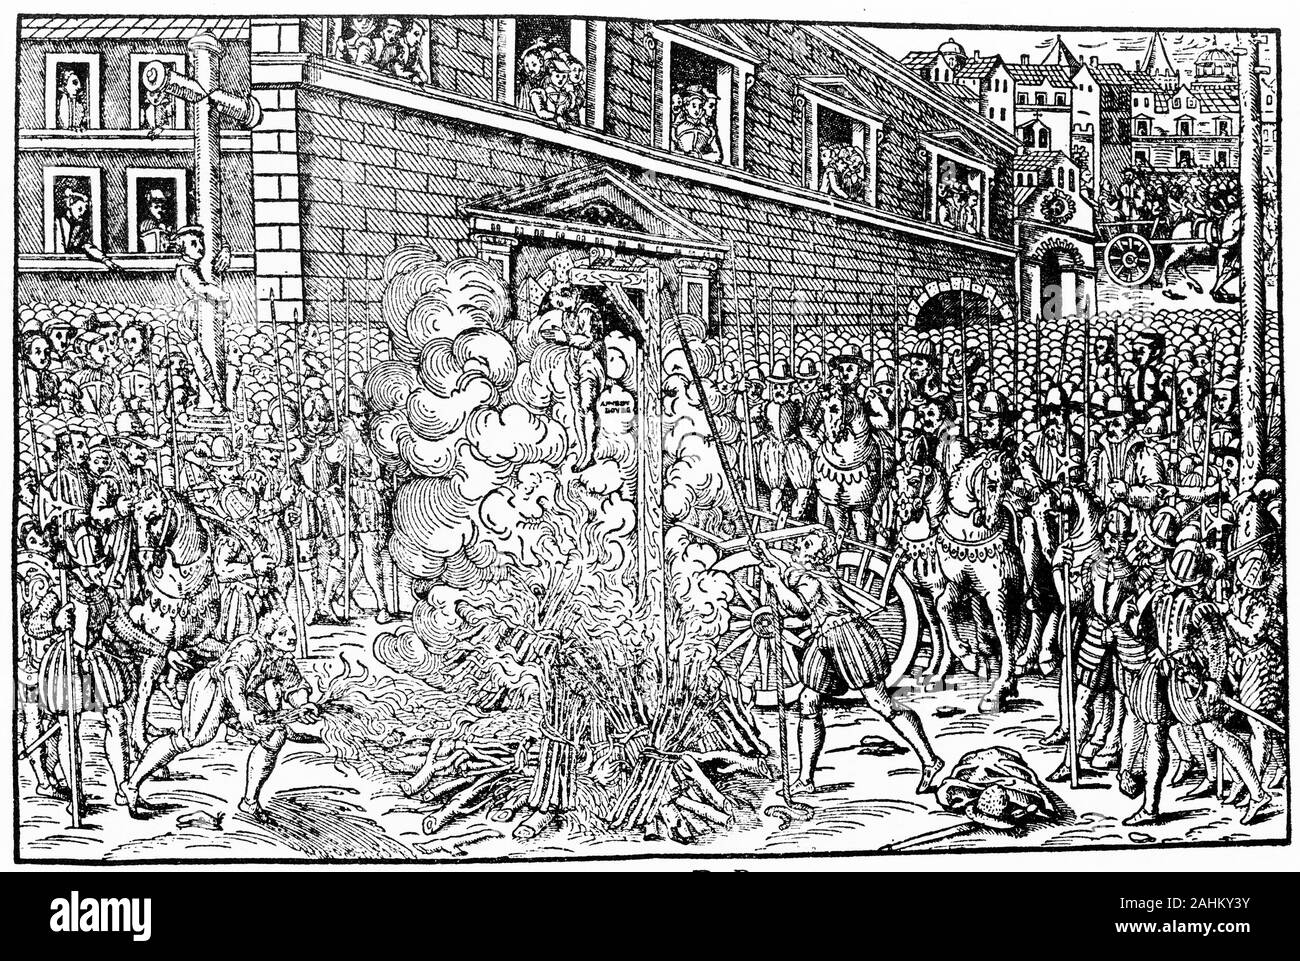 Incisione del magistrato protestante Anne du Bourg (1521-1559) torturati e impiccati dai cattolici nel luogo Saint-Jean en Greve, Parigi, 21.12.1559. du Bourg era un magistrato francese e nipote del cancelliere Antoine du Bourg. Foto Stock